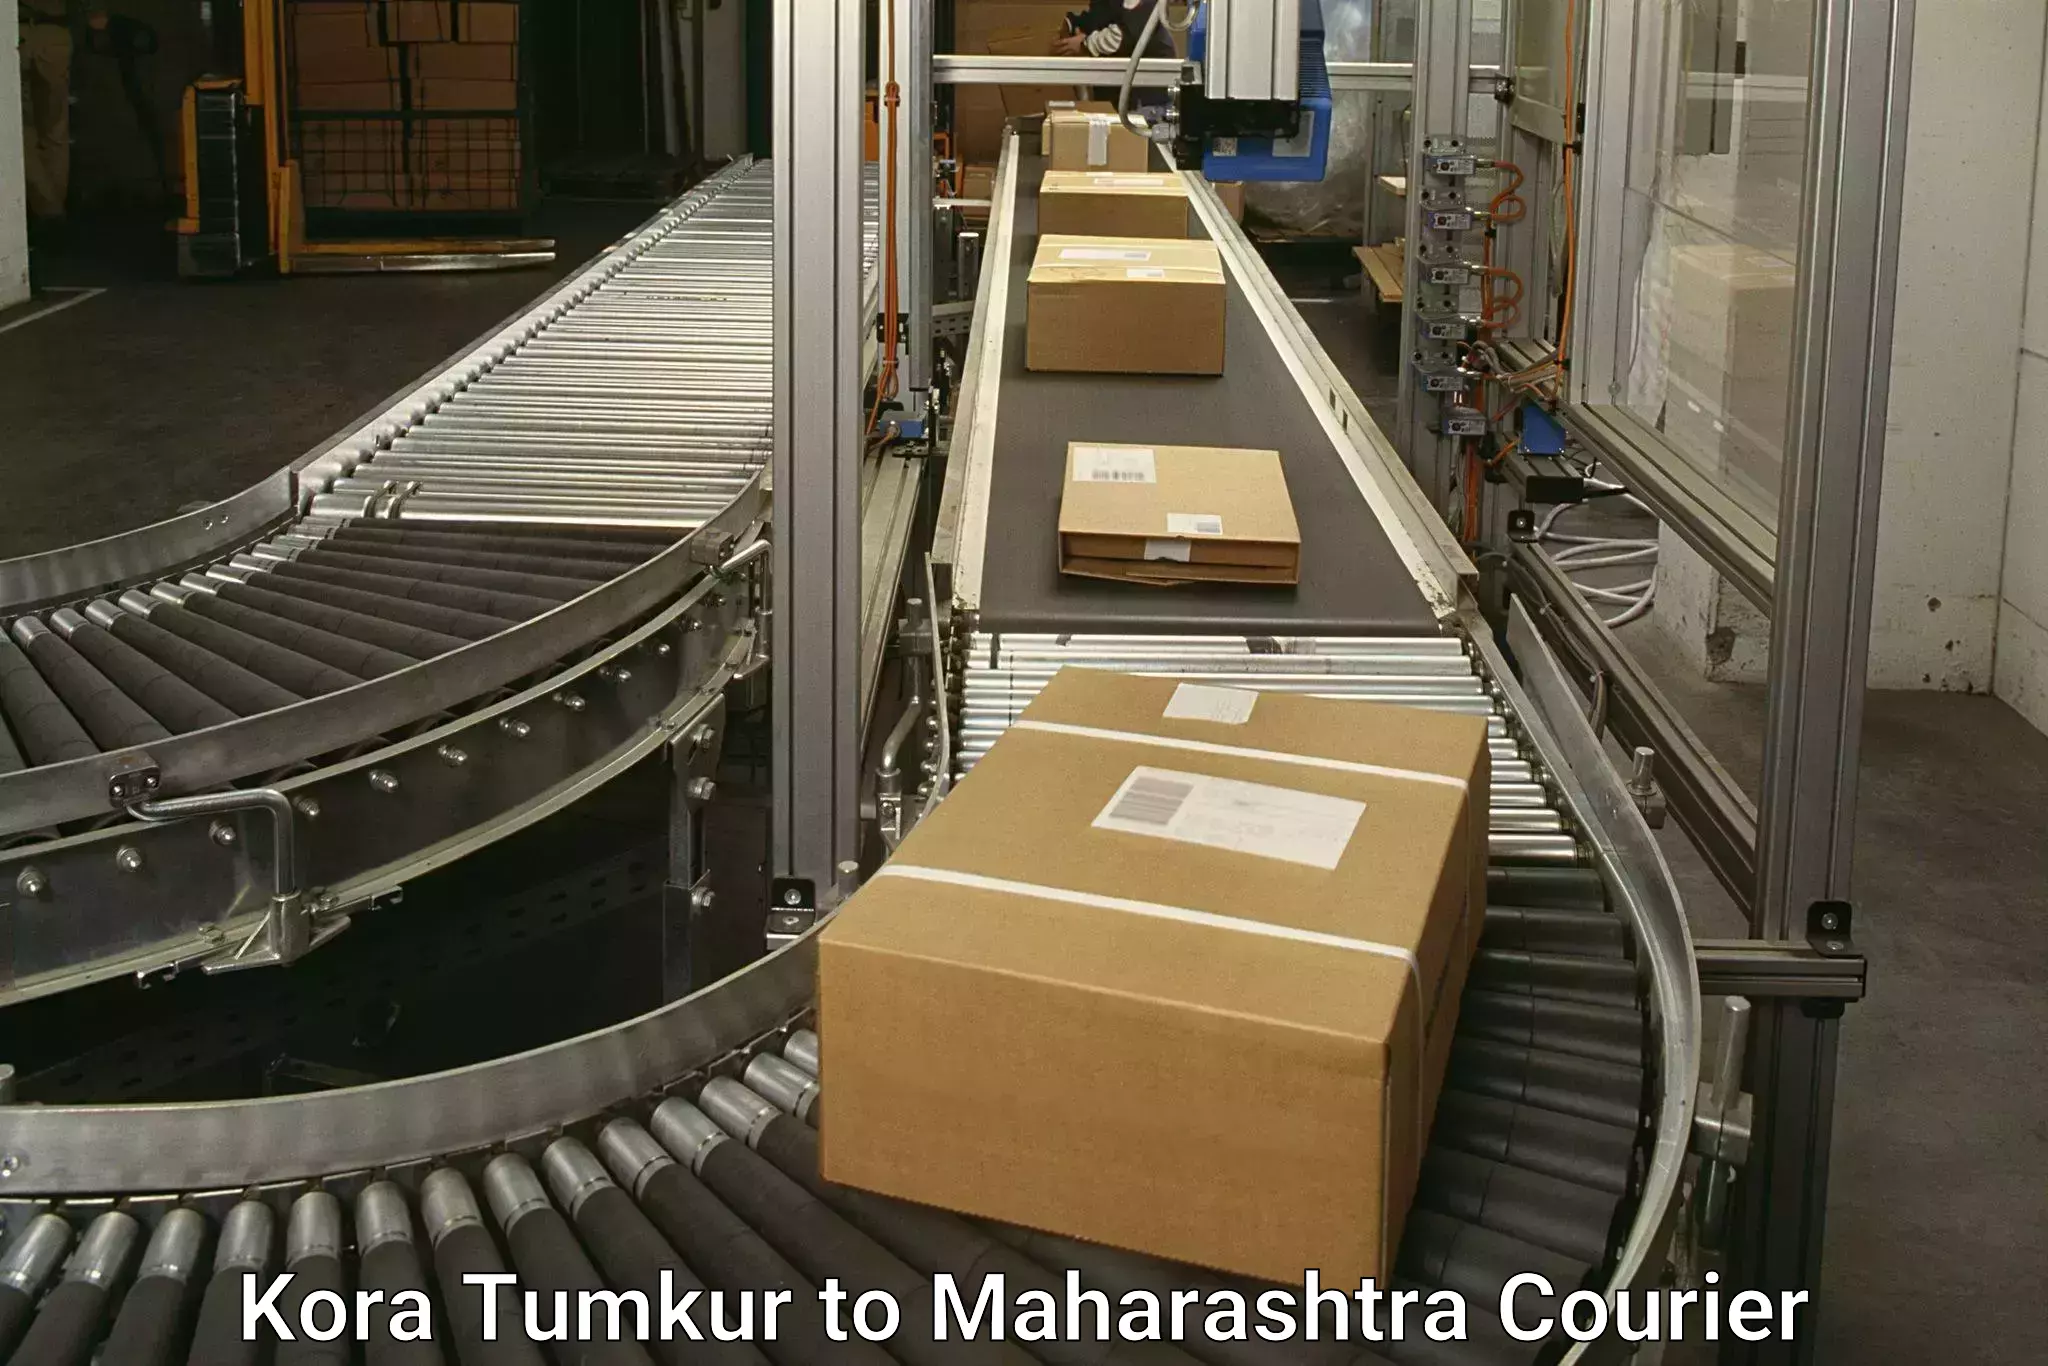 Advanced parcel tracking Kora Tumkur to Maharashtra